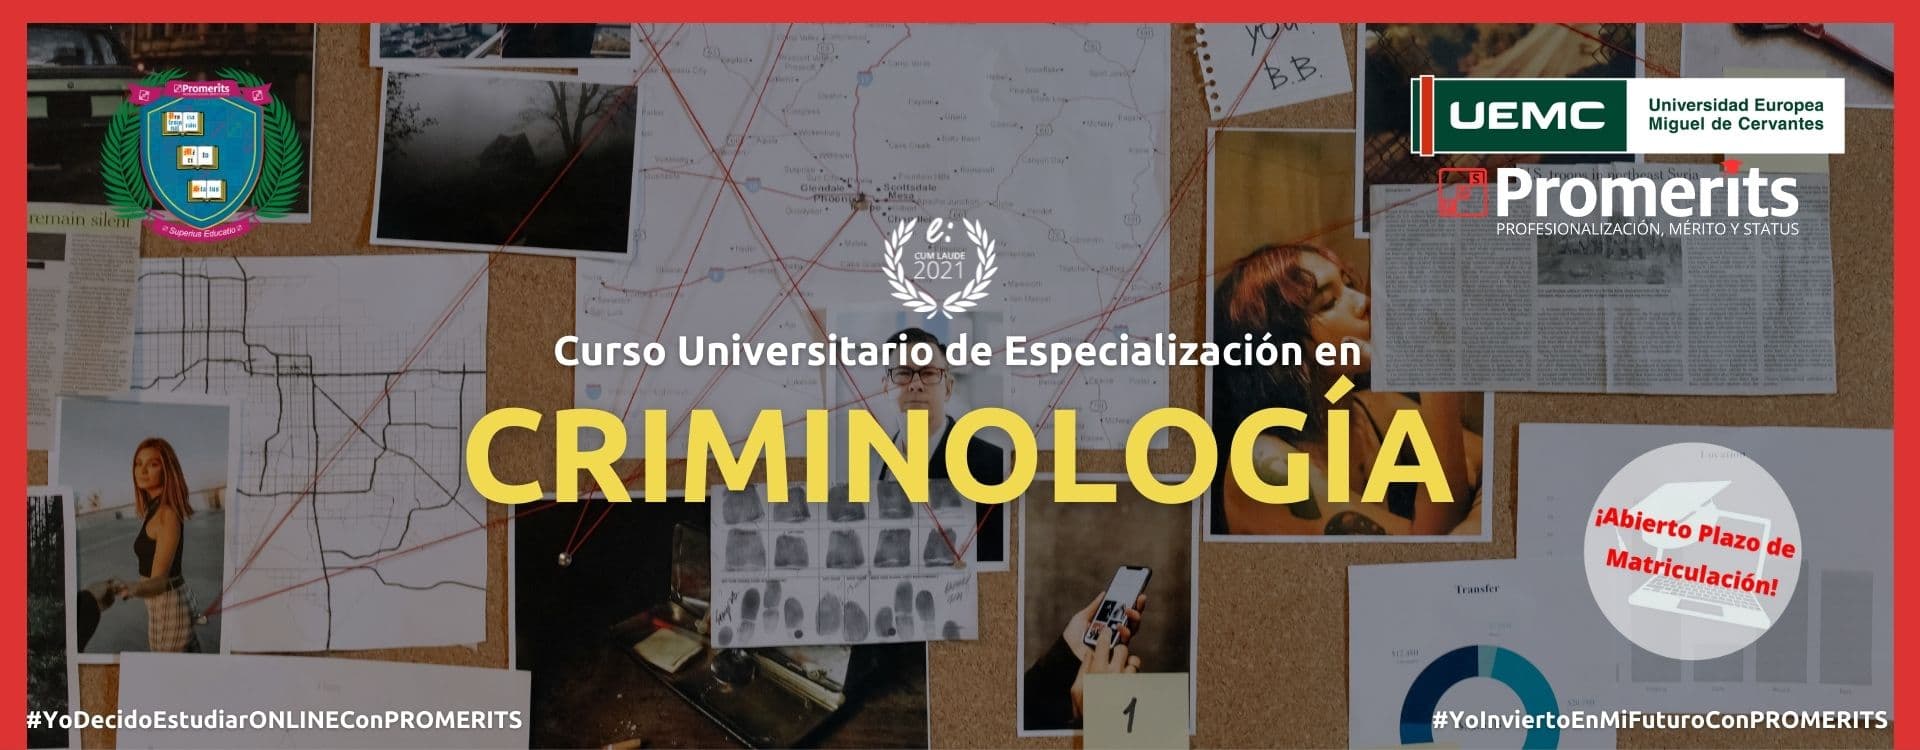 Curso Universitario de Especialización en Criminología